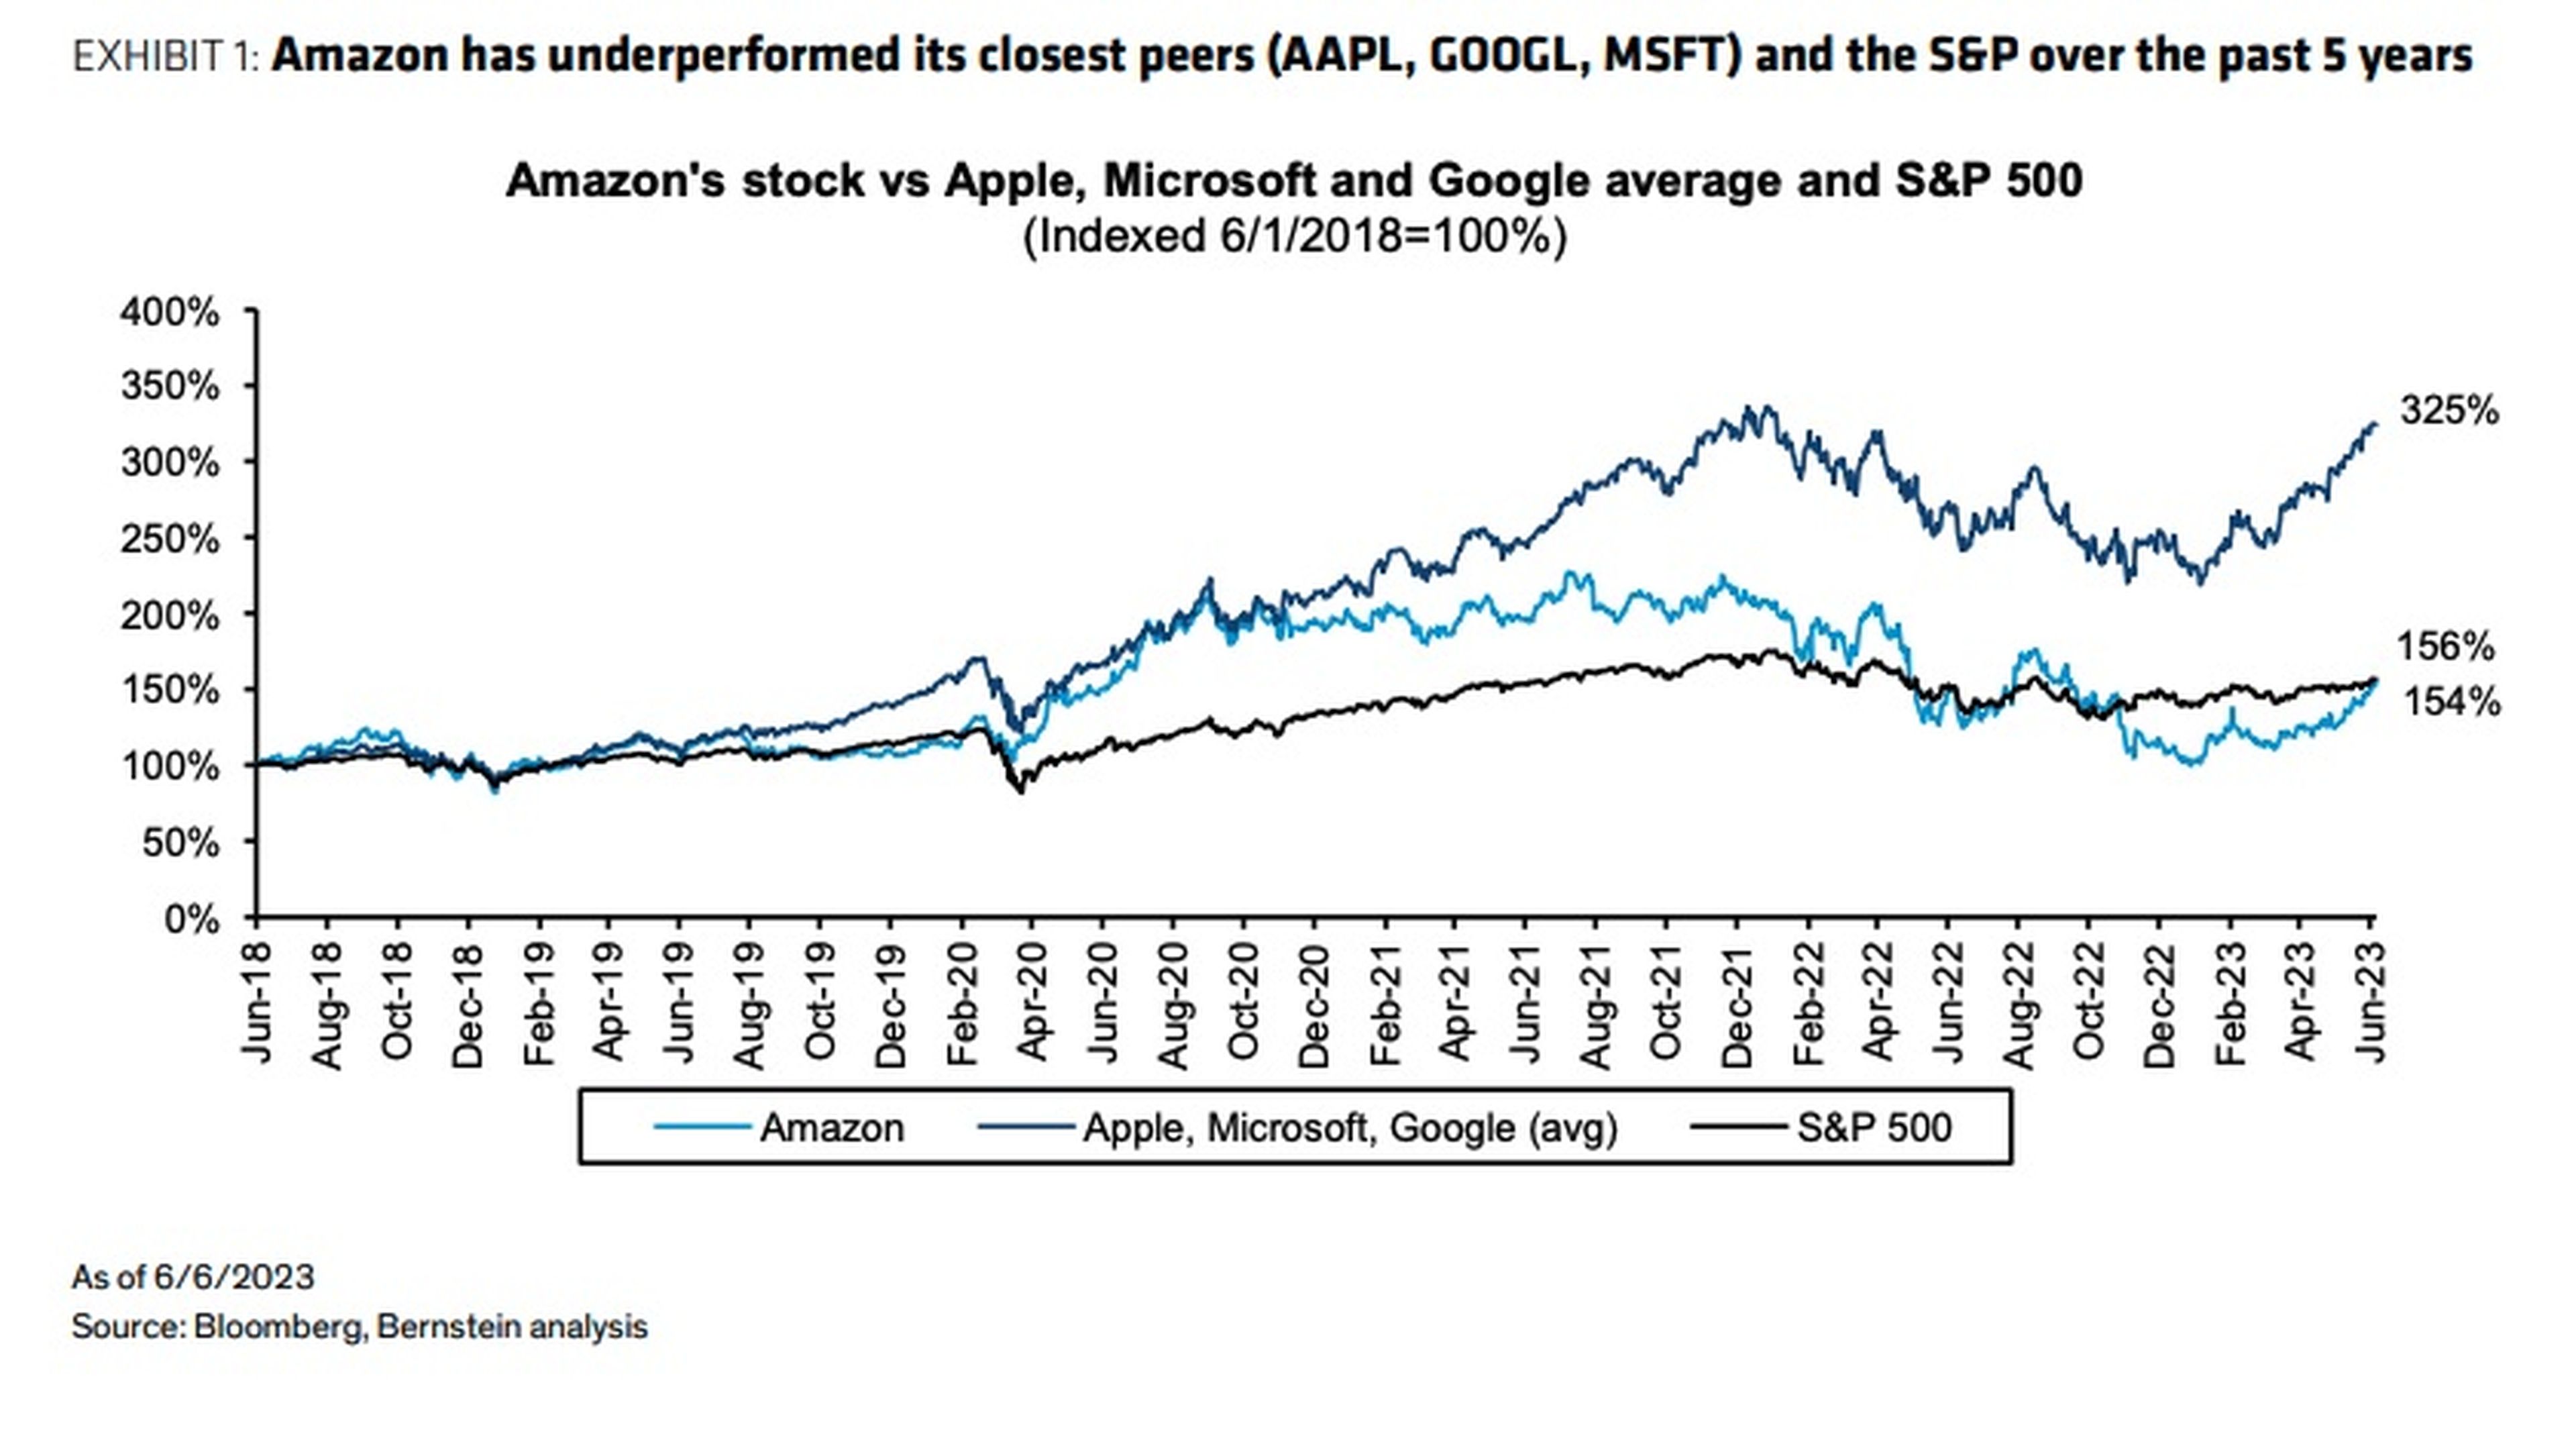 Una gráfica que muestra cómo Amazon ha tenido un rendimiento inferior al de sus competidores más cercanos y al del S&P 500 en los últimos 5 años.